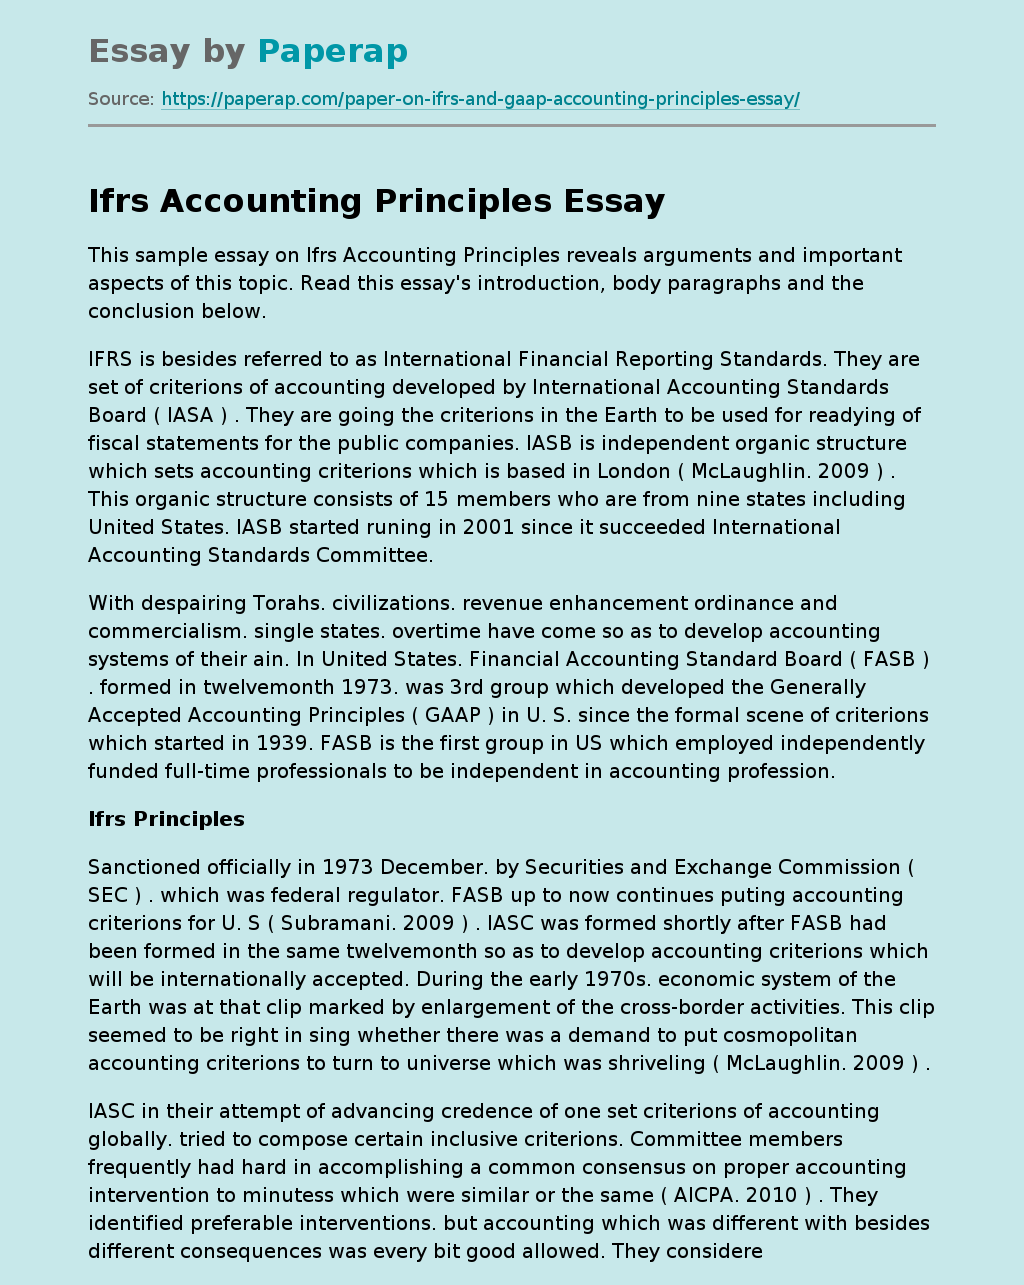 Ifrs Accounting Principles